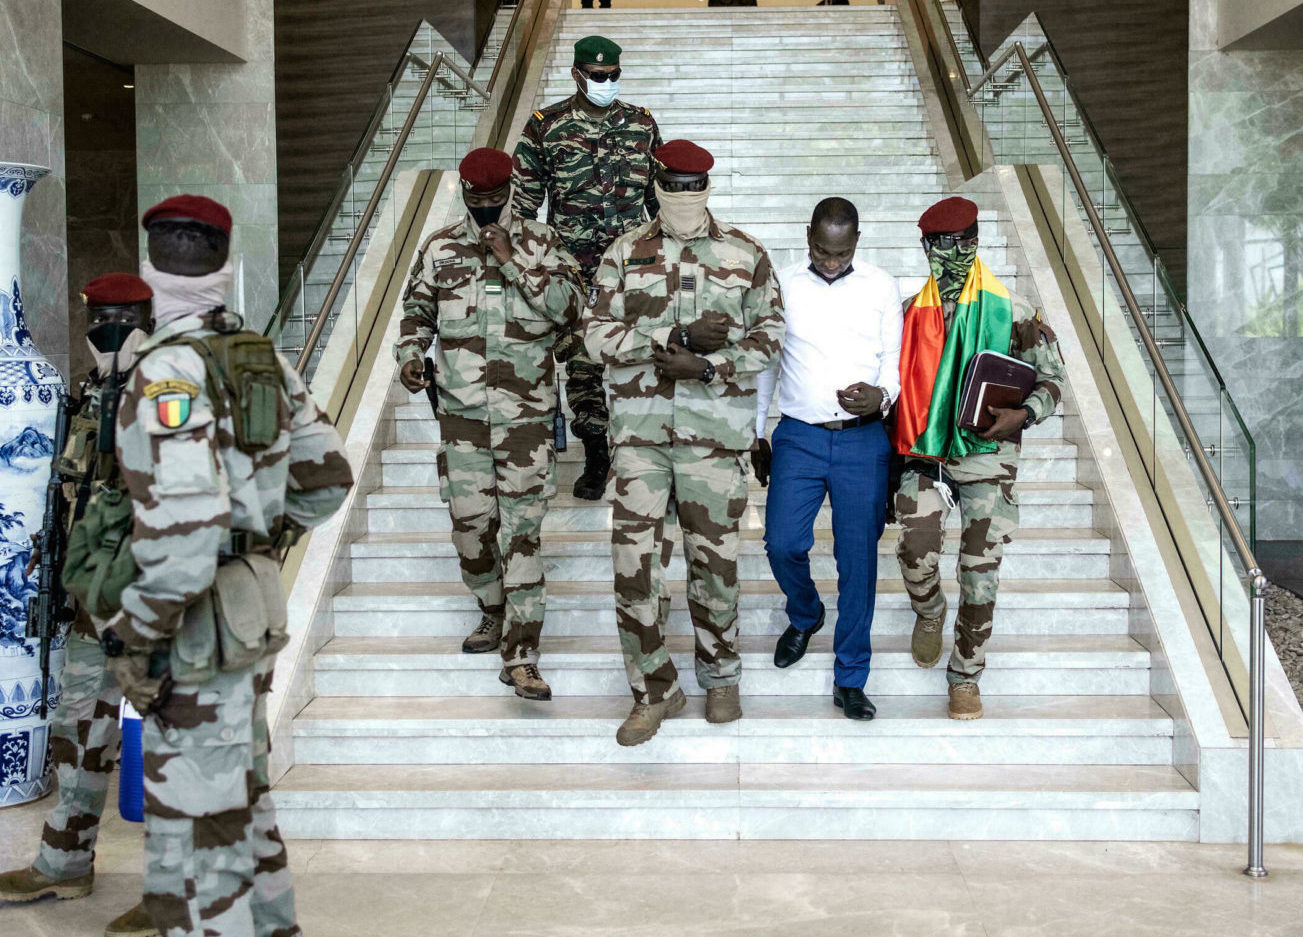 Le marabout Sénégalais du colonel Doumbouya